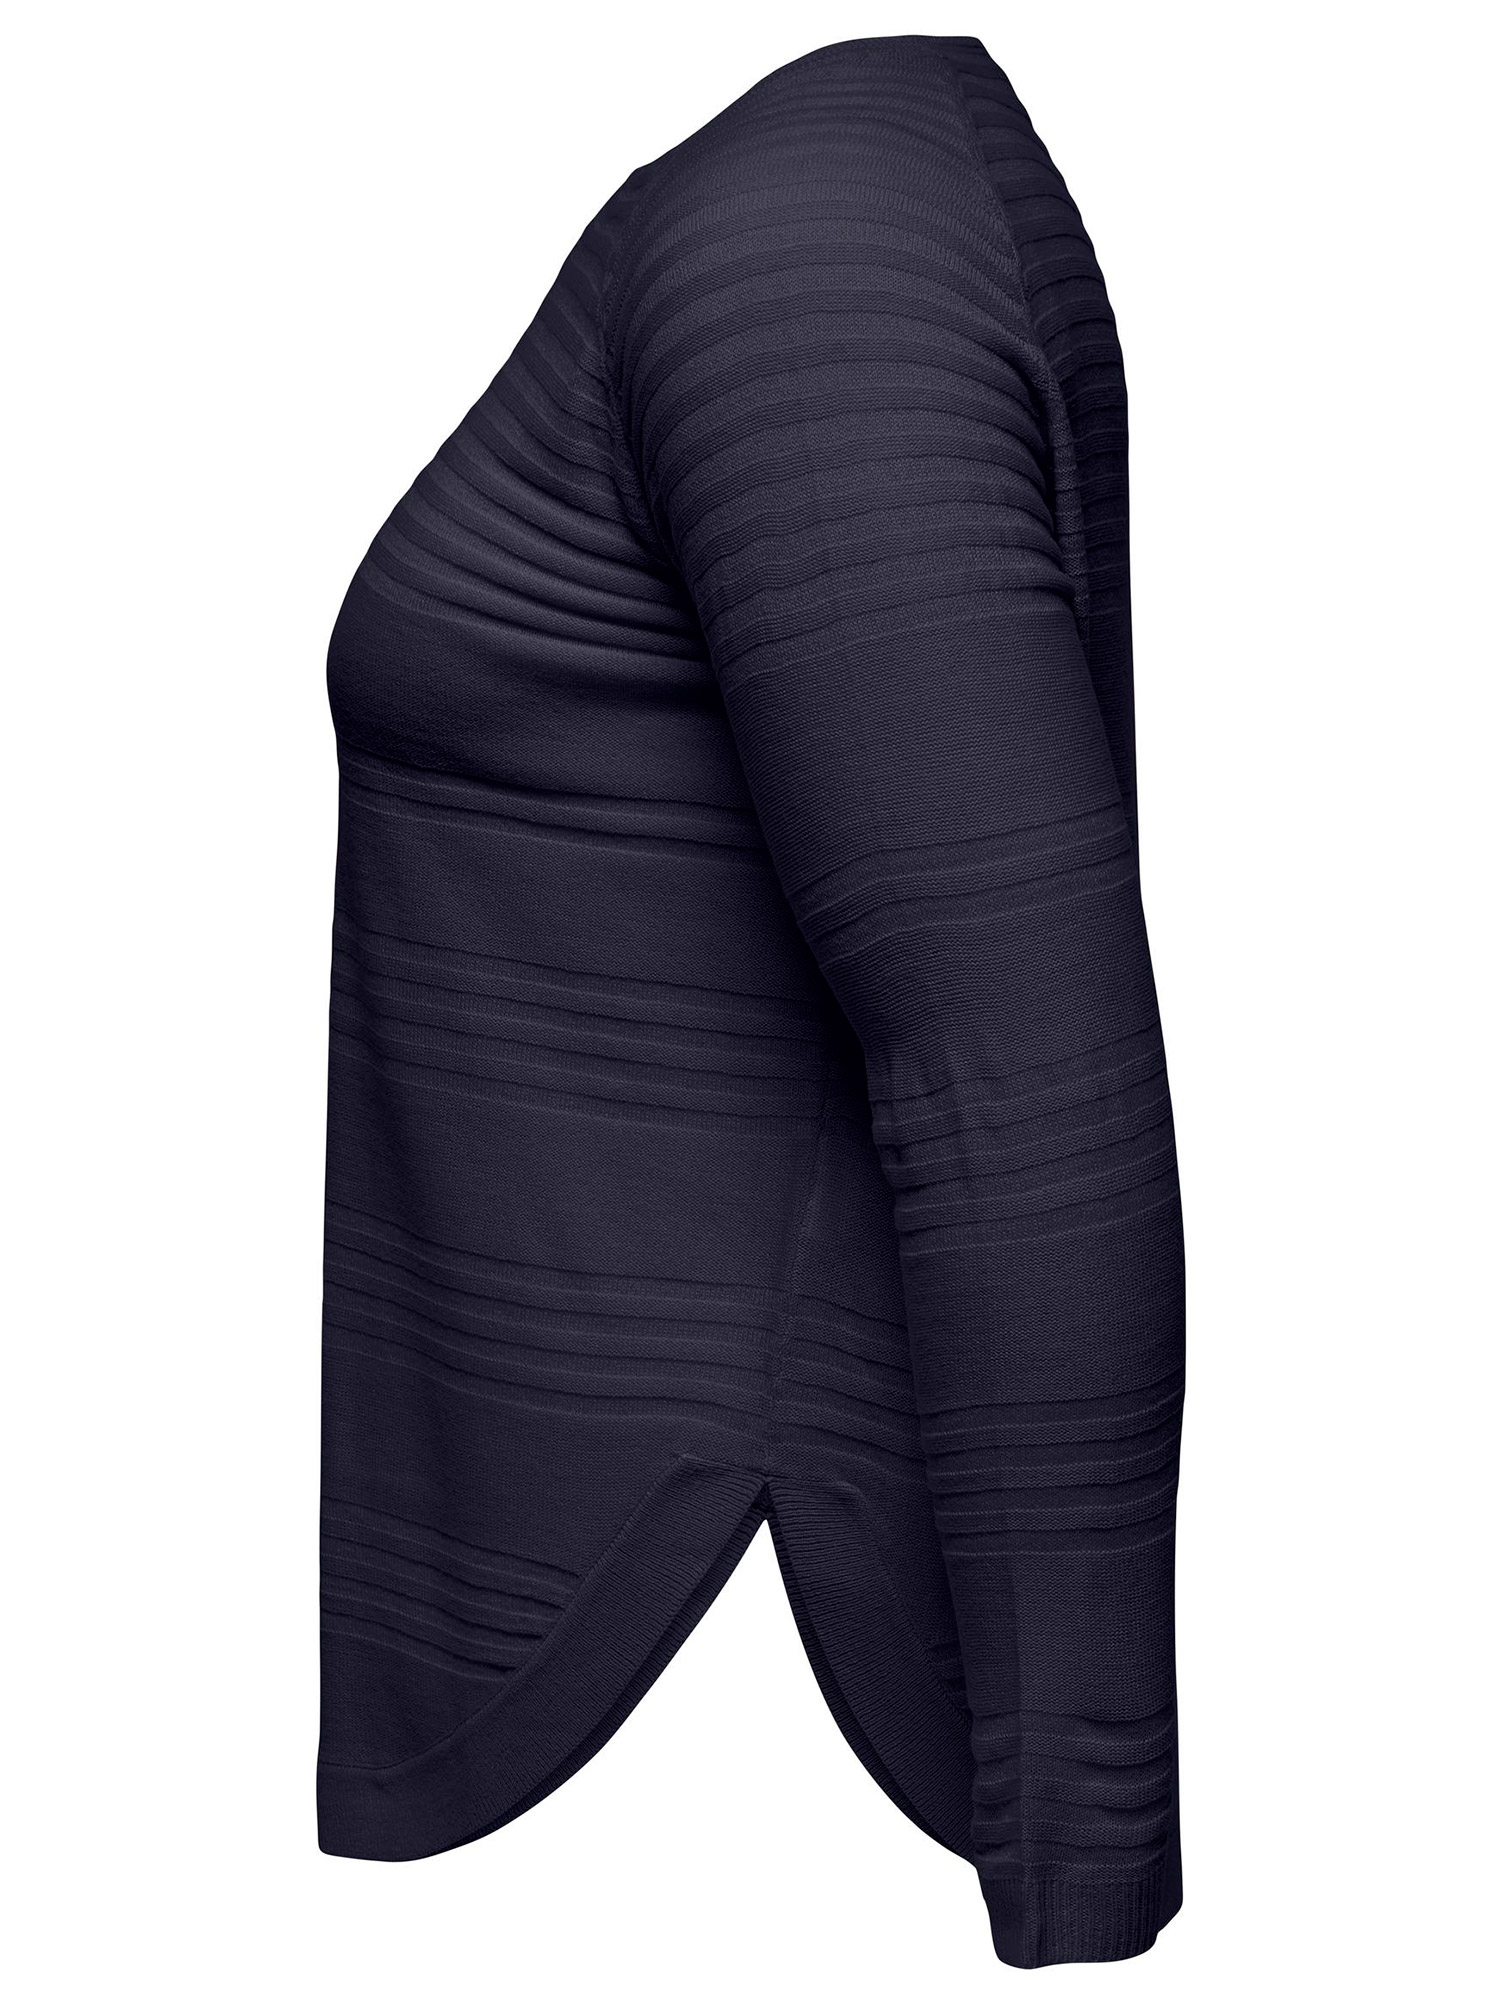 NEWAIRPLAIN - Mørkeblå strik bluse med striber fra Only Carmakoma